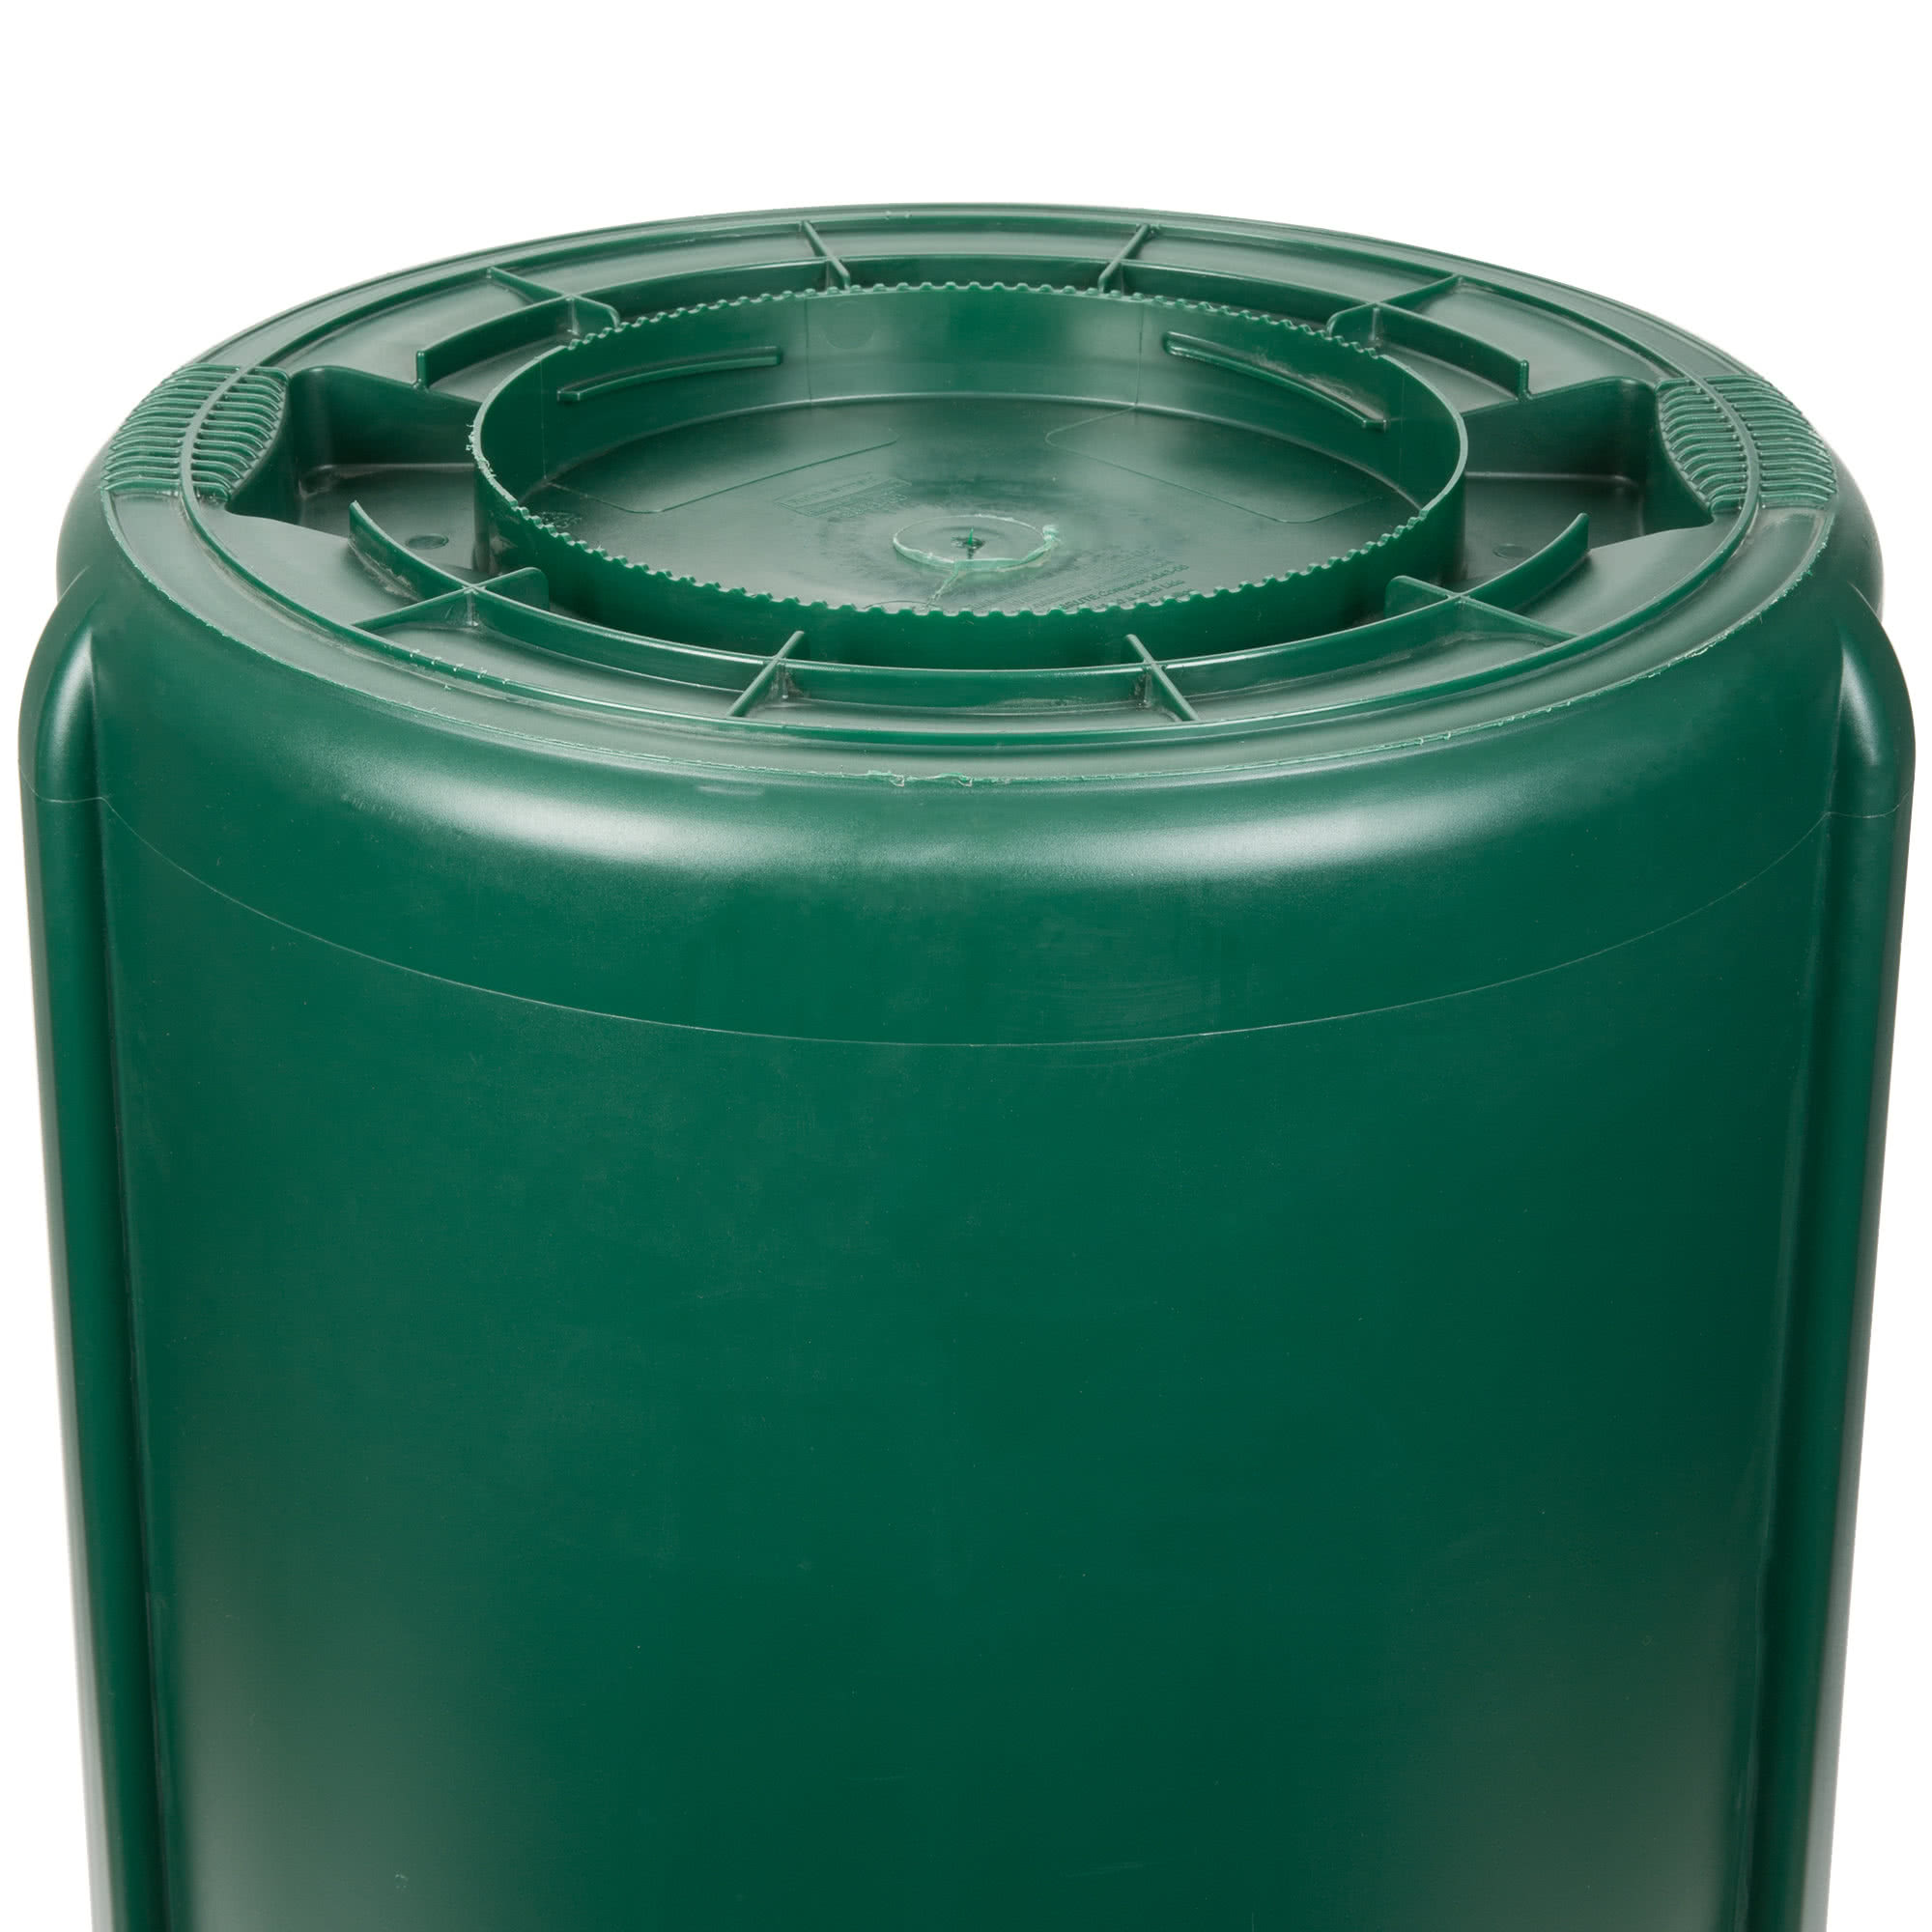 Rubbermaid 1779741 contenedor Brute color verde con capacidad para 44 galones